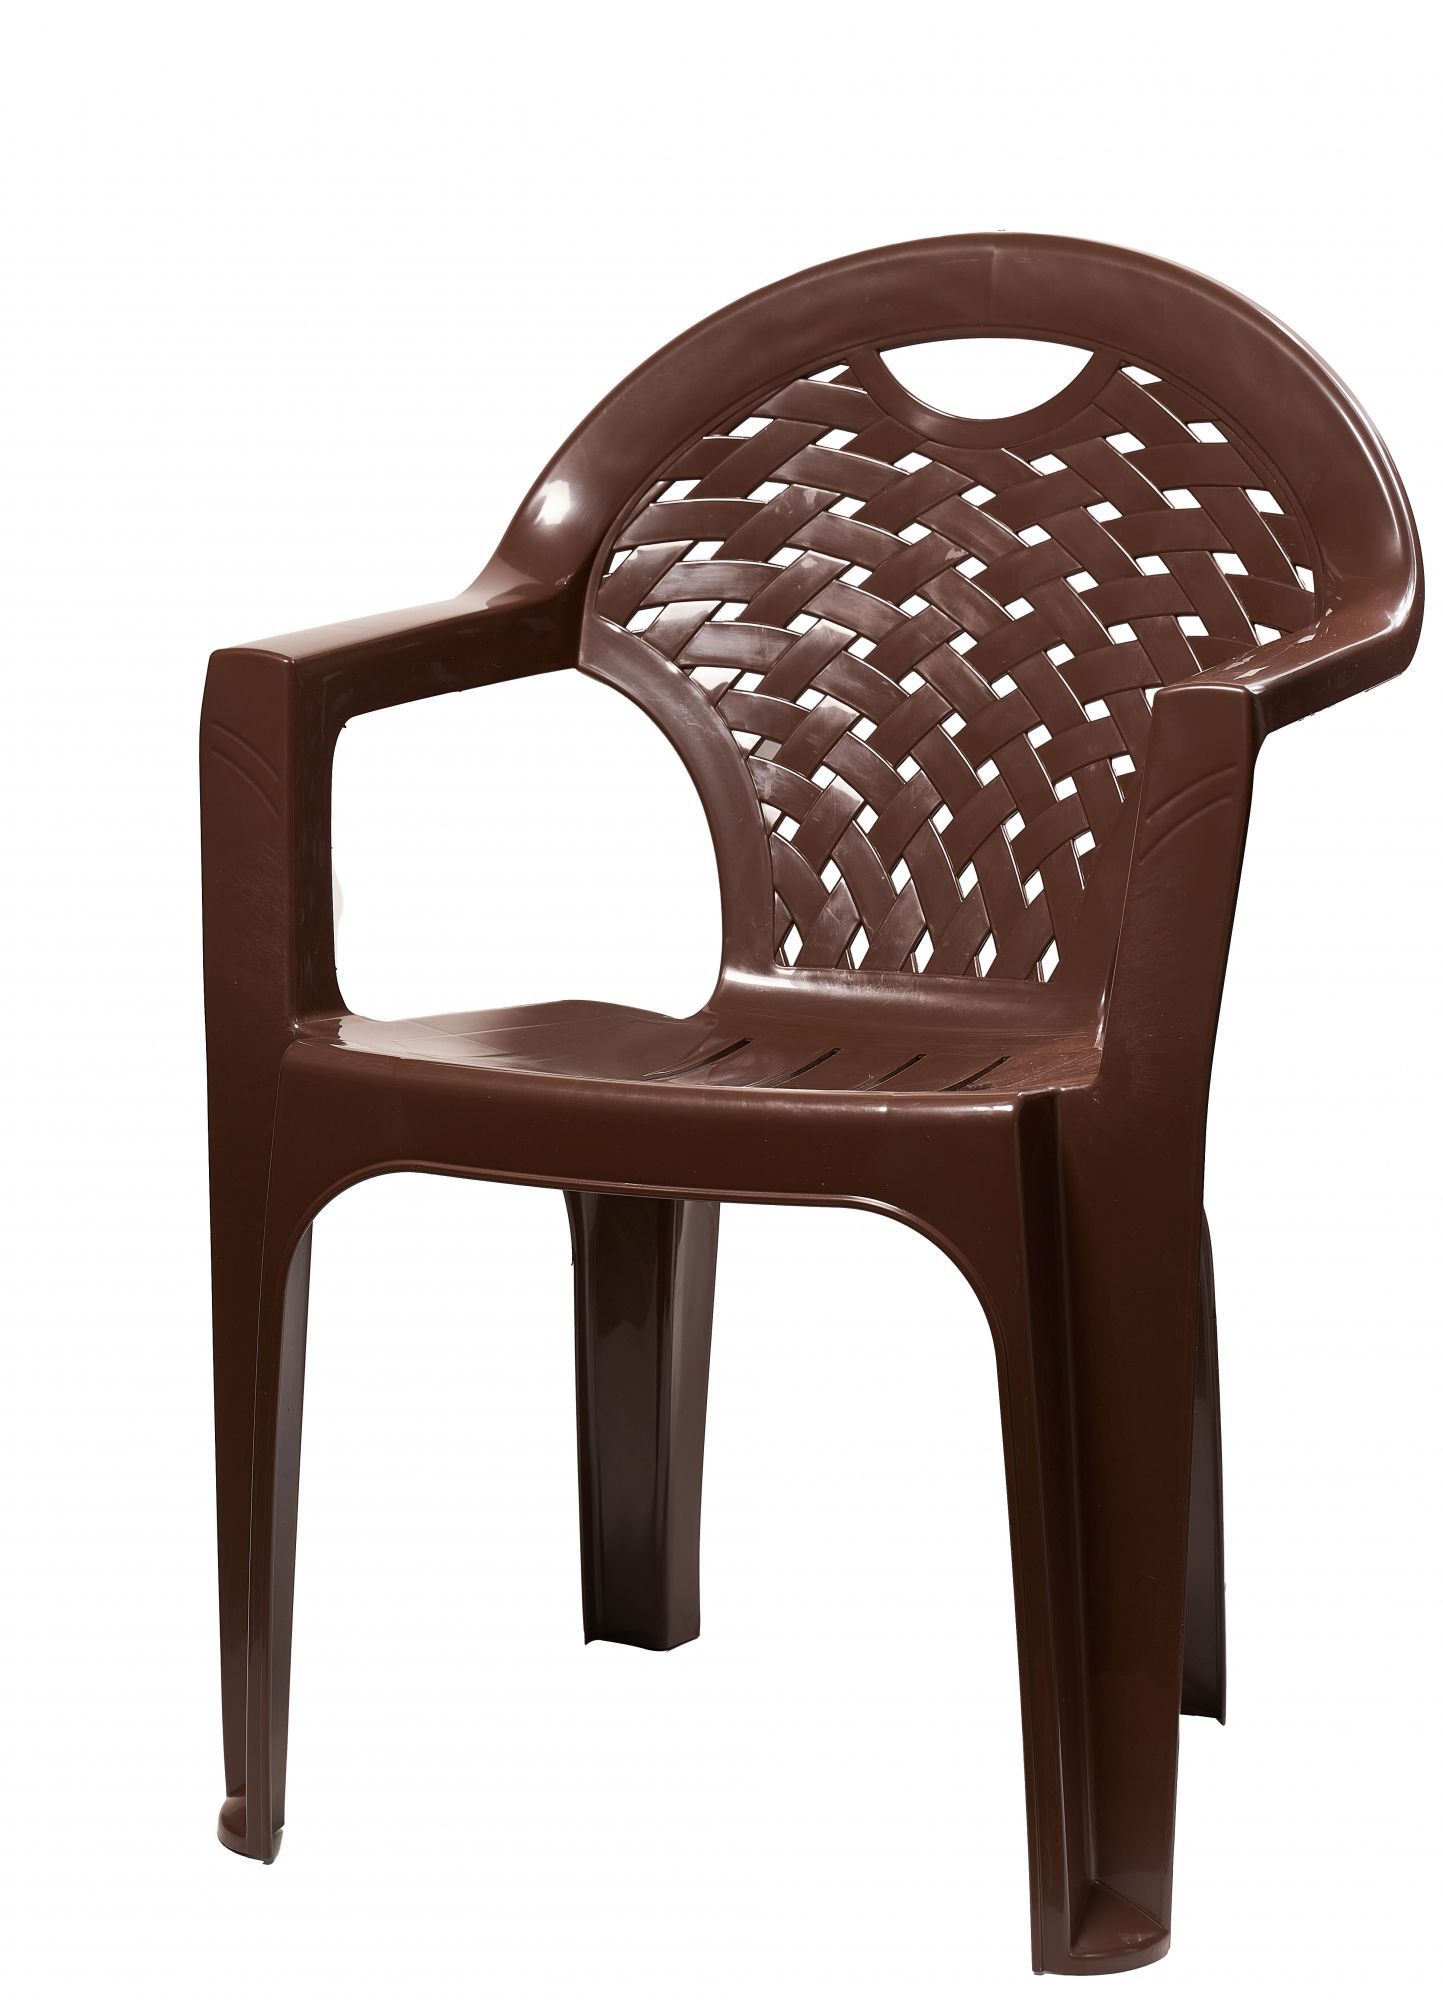 Мебель из пластика АЛЬТЕРНАТИВА М8020 кресло (коричневый)